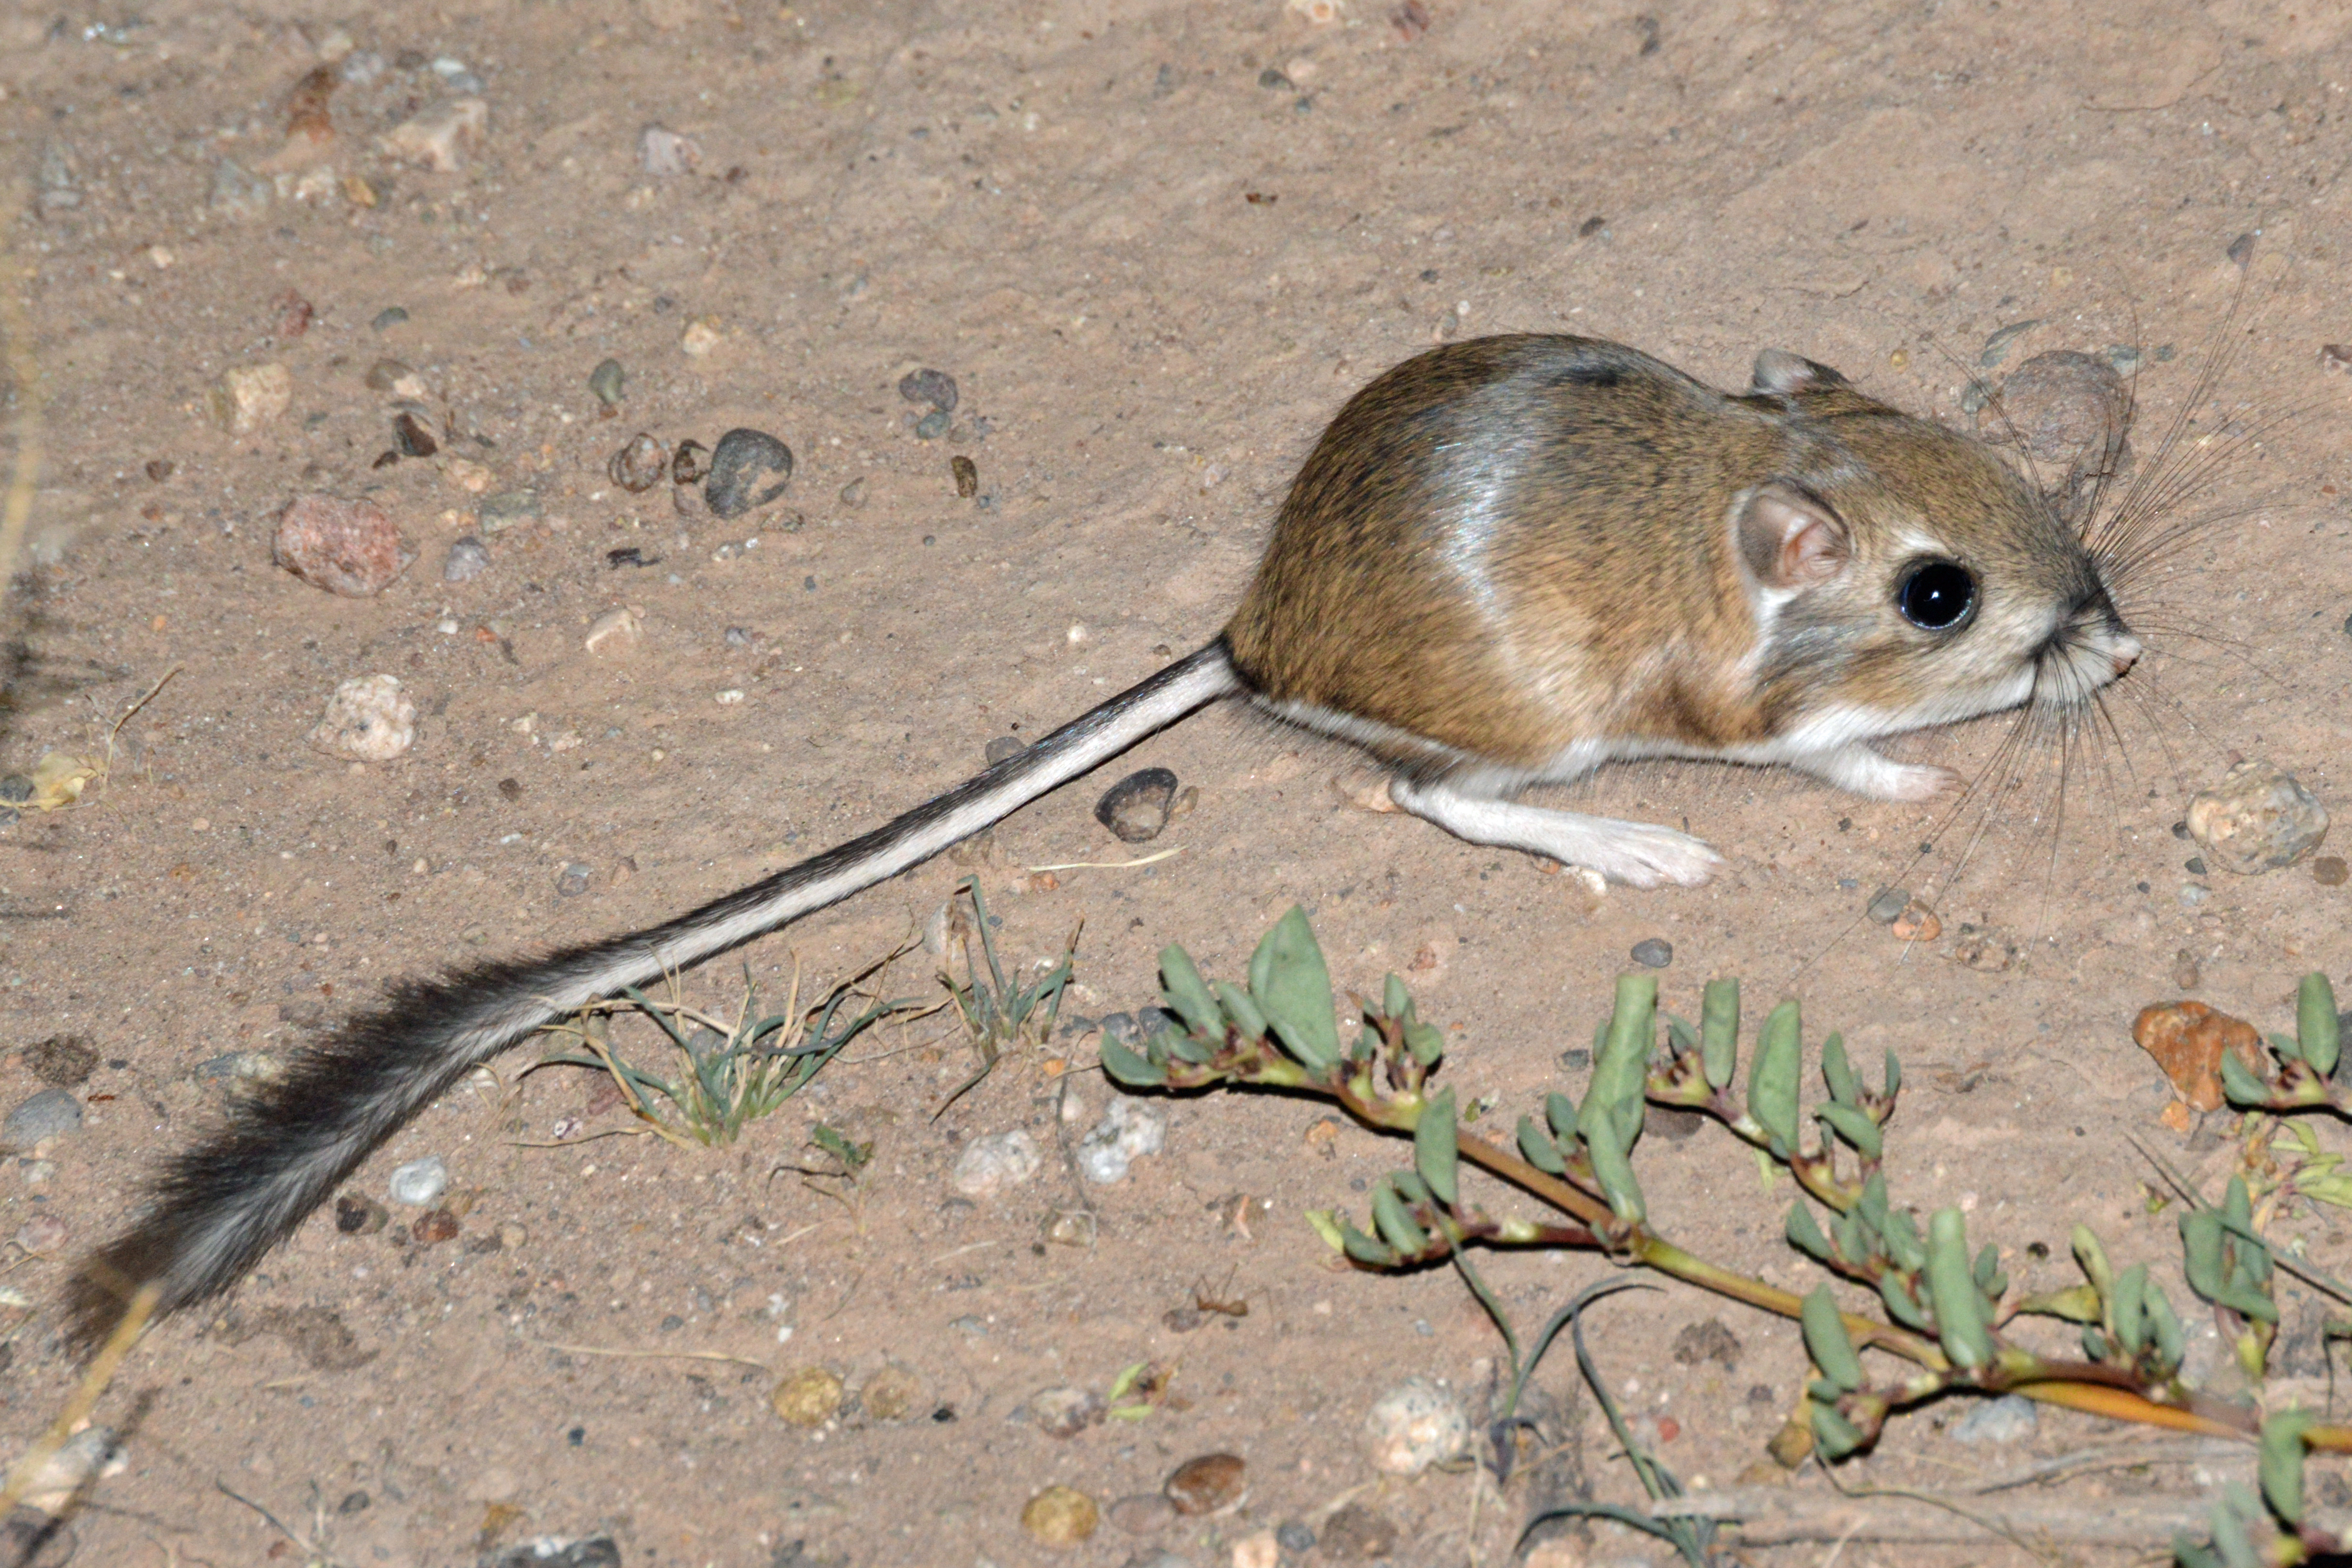 Rat, Rodent Species, Habitats & Characteristics